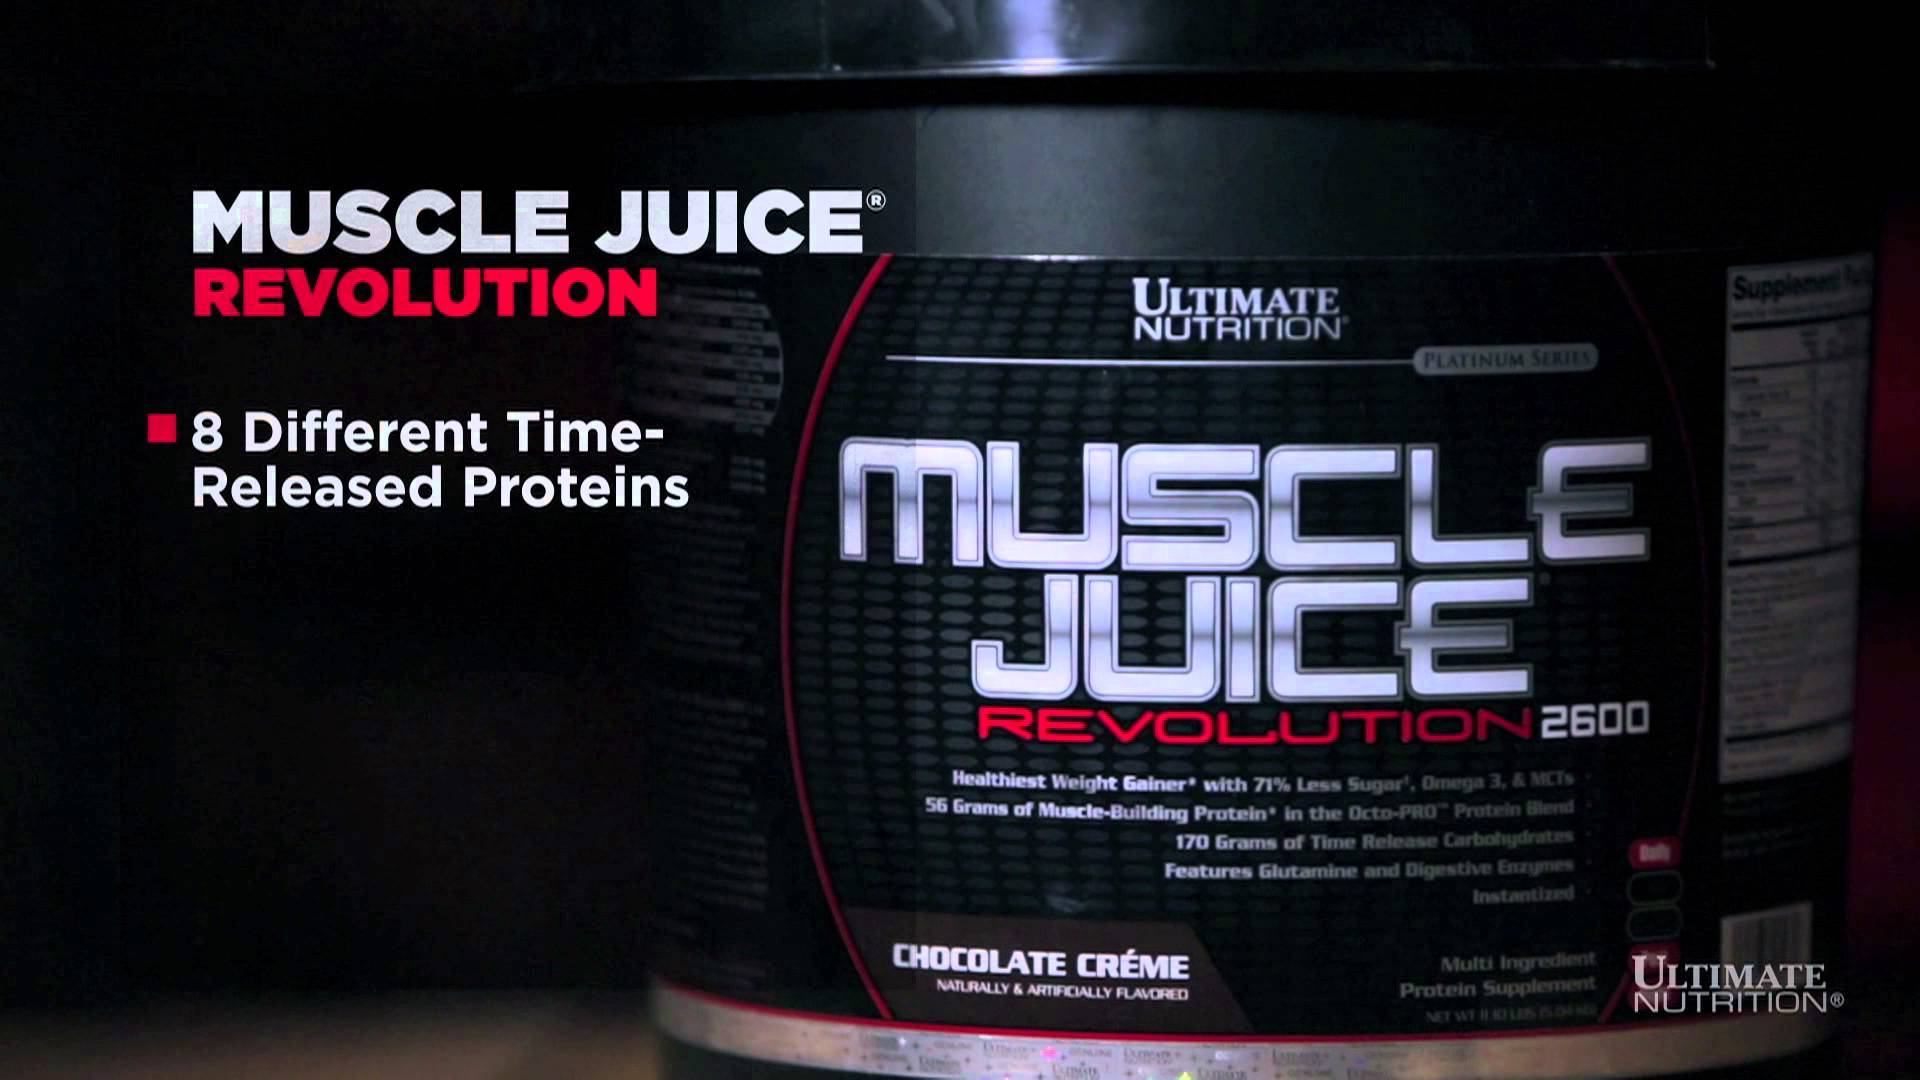 Калорийность гейнер ultimate muscle juice revolution 2600 [спортивное и дополнительное питание]. химический состав и пищевая ценность